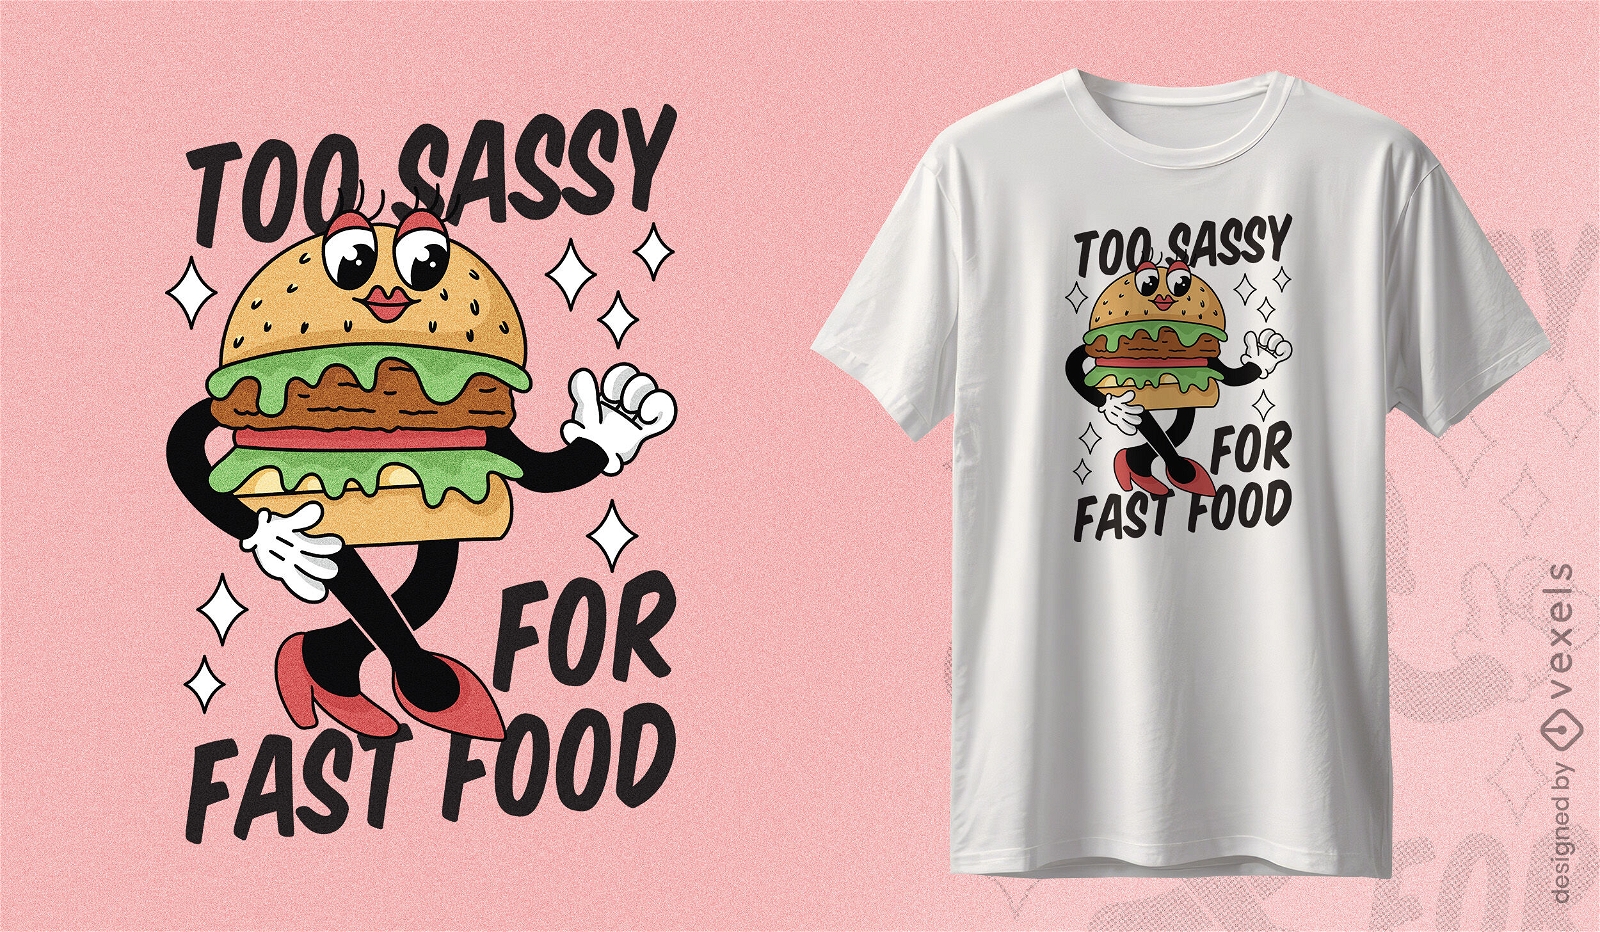 Sassy burger character t-shirt design